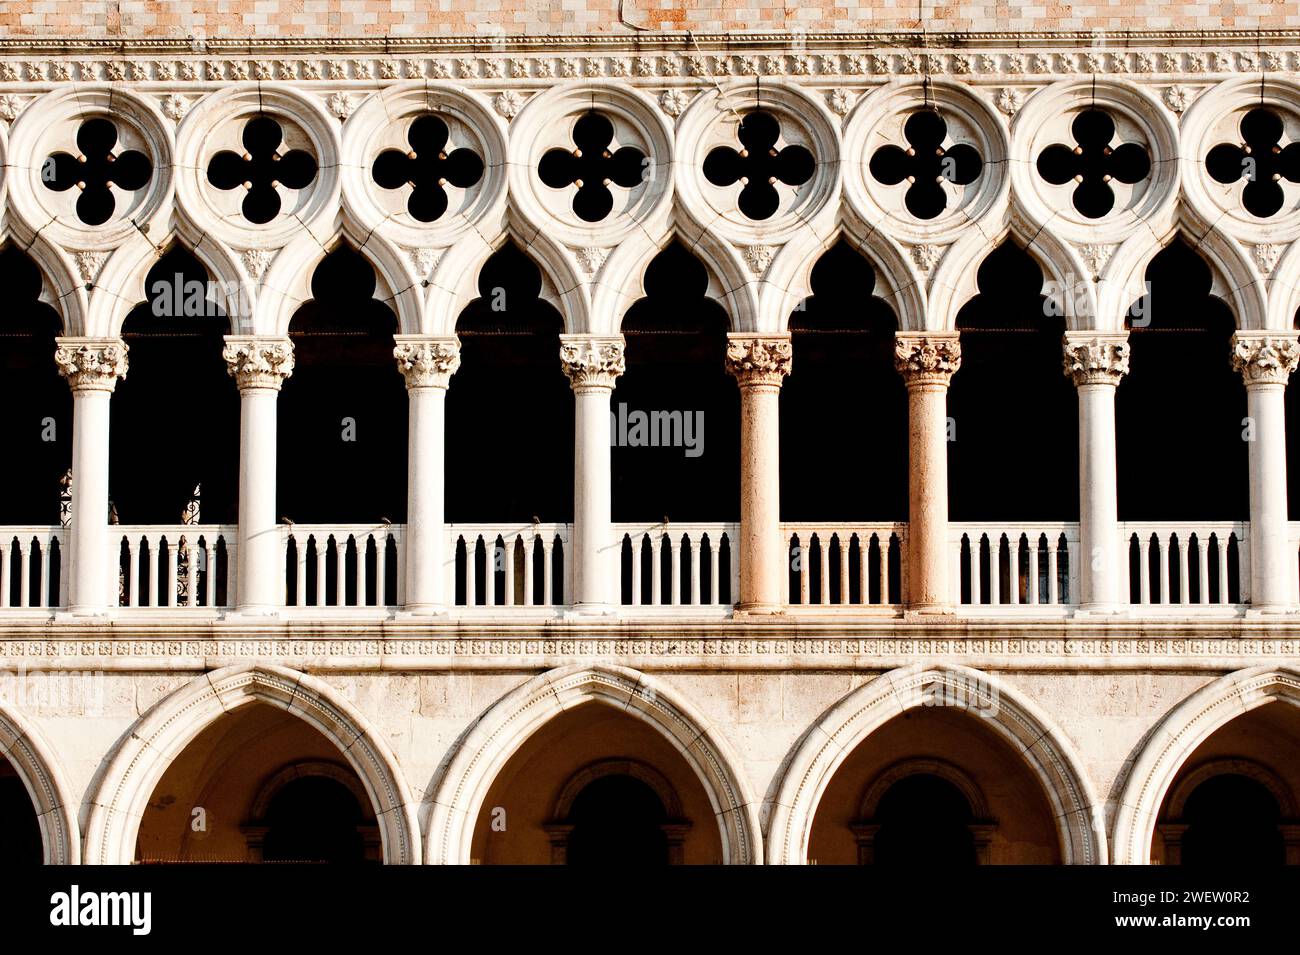 Le Palais des Doges dans le style gothique vénitien, détail du balcon, Venise, Italie Banque D'Images